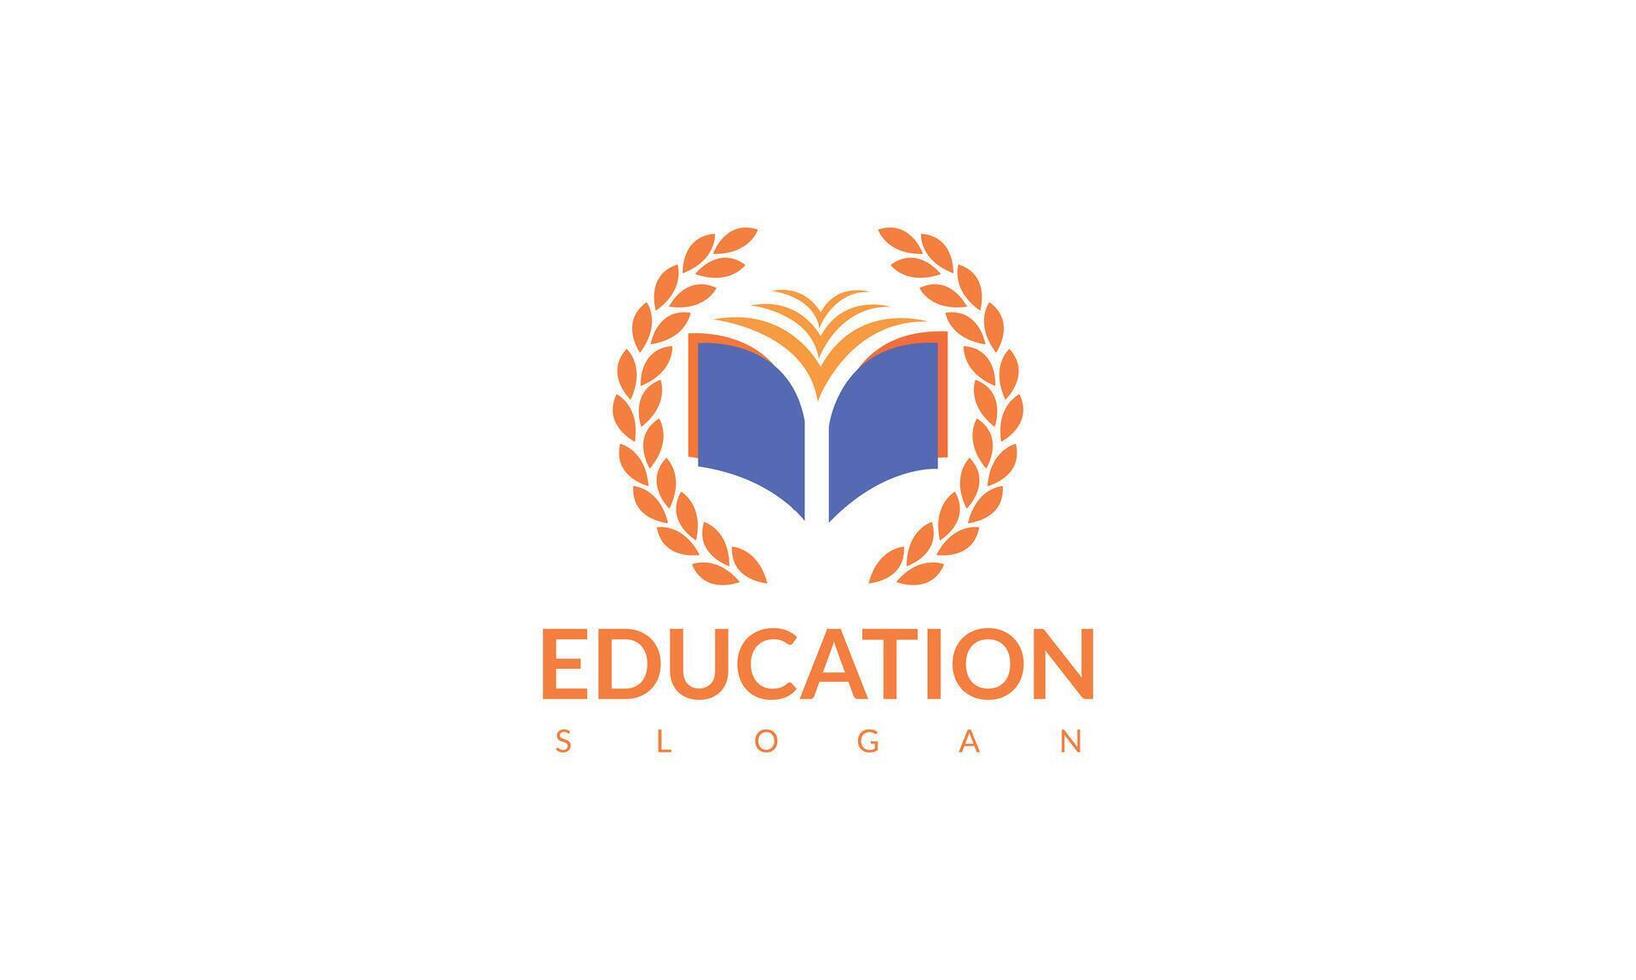 Universität Logo Design Vektor Illustration